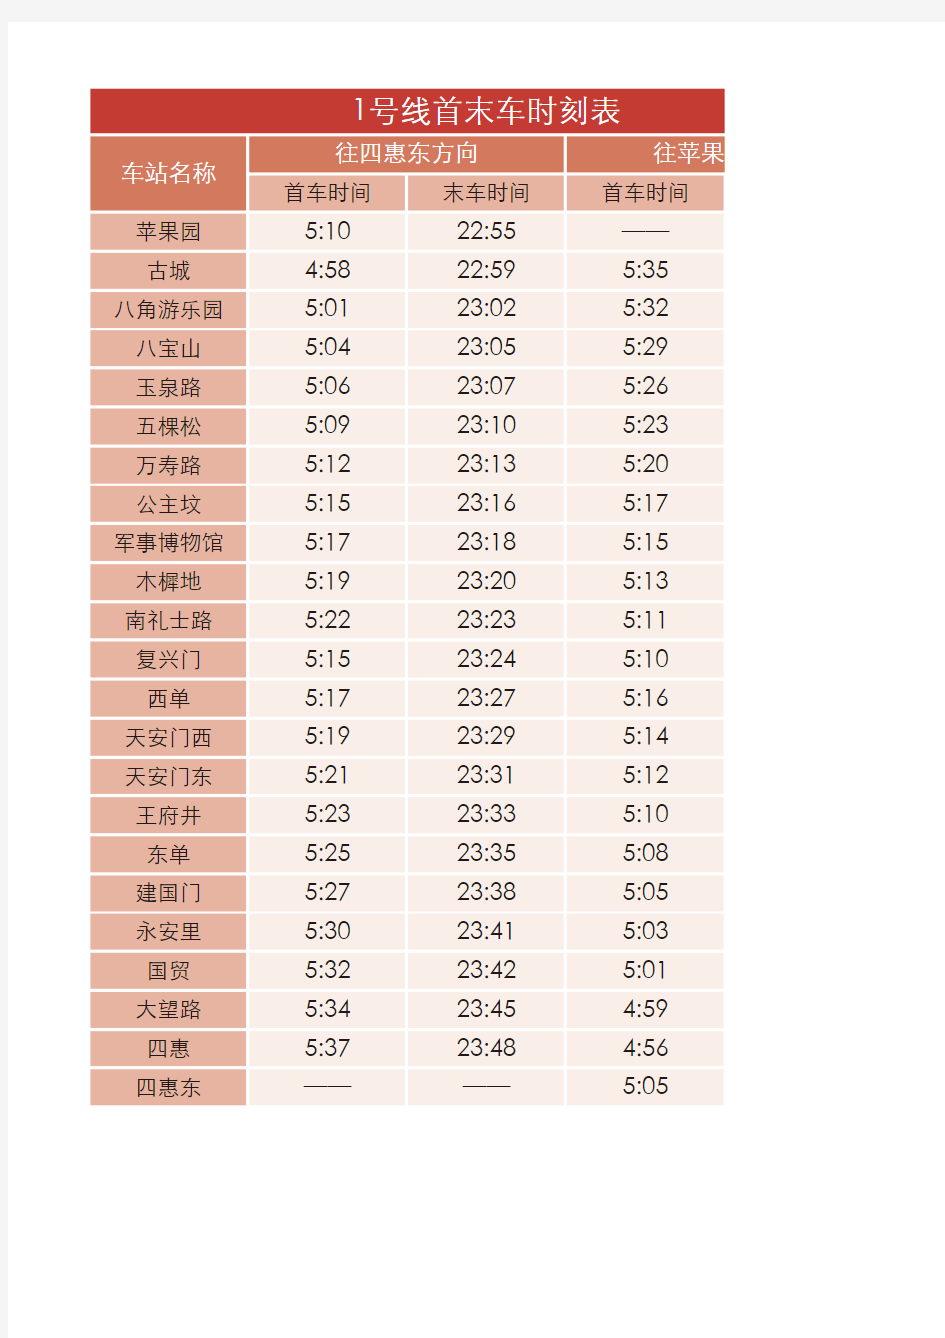 北京地铁线路首末车时间表(2014.1)